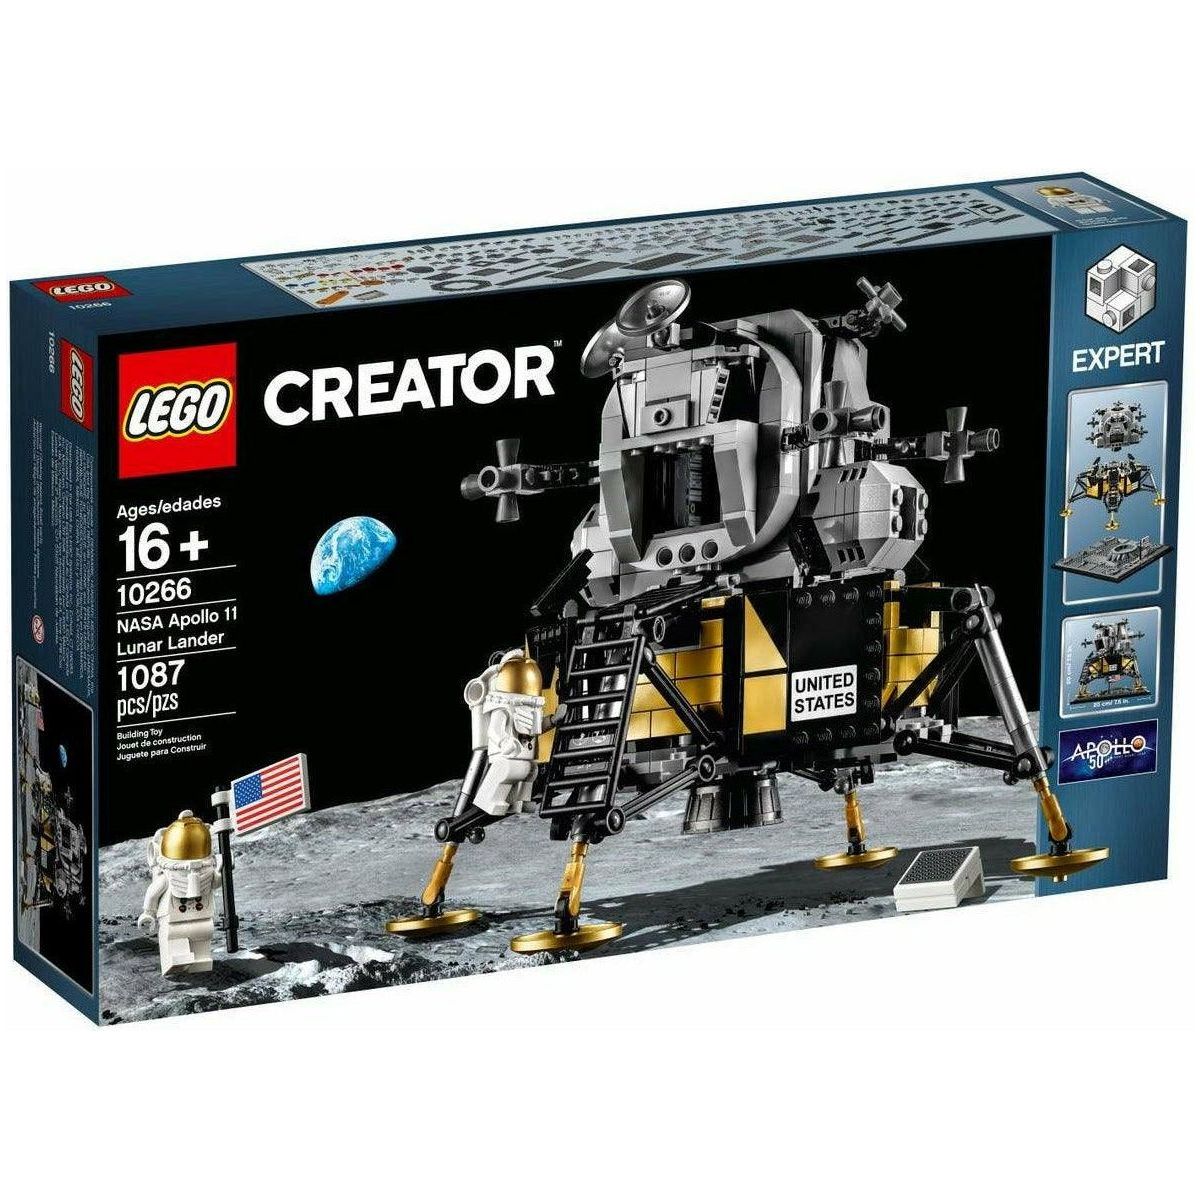 LEGO Creator Expert NASA Apollo 11 Lunar Lander 10266 Building Kit (1,087 Pieces) - BumbleToys - 14 Years & Up, 18+, Boys, Creator, LEGO, OXE, Pre-Order